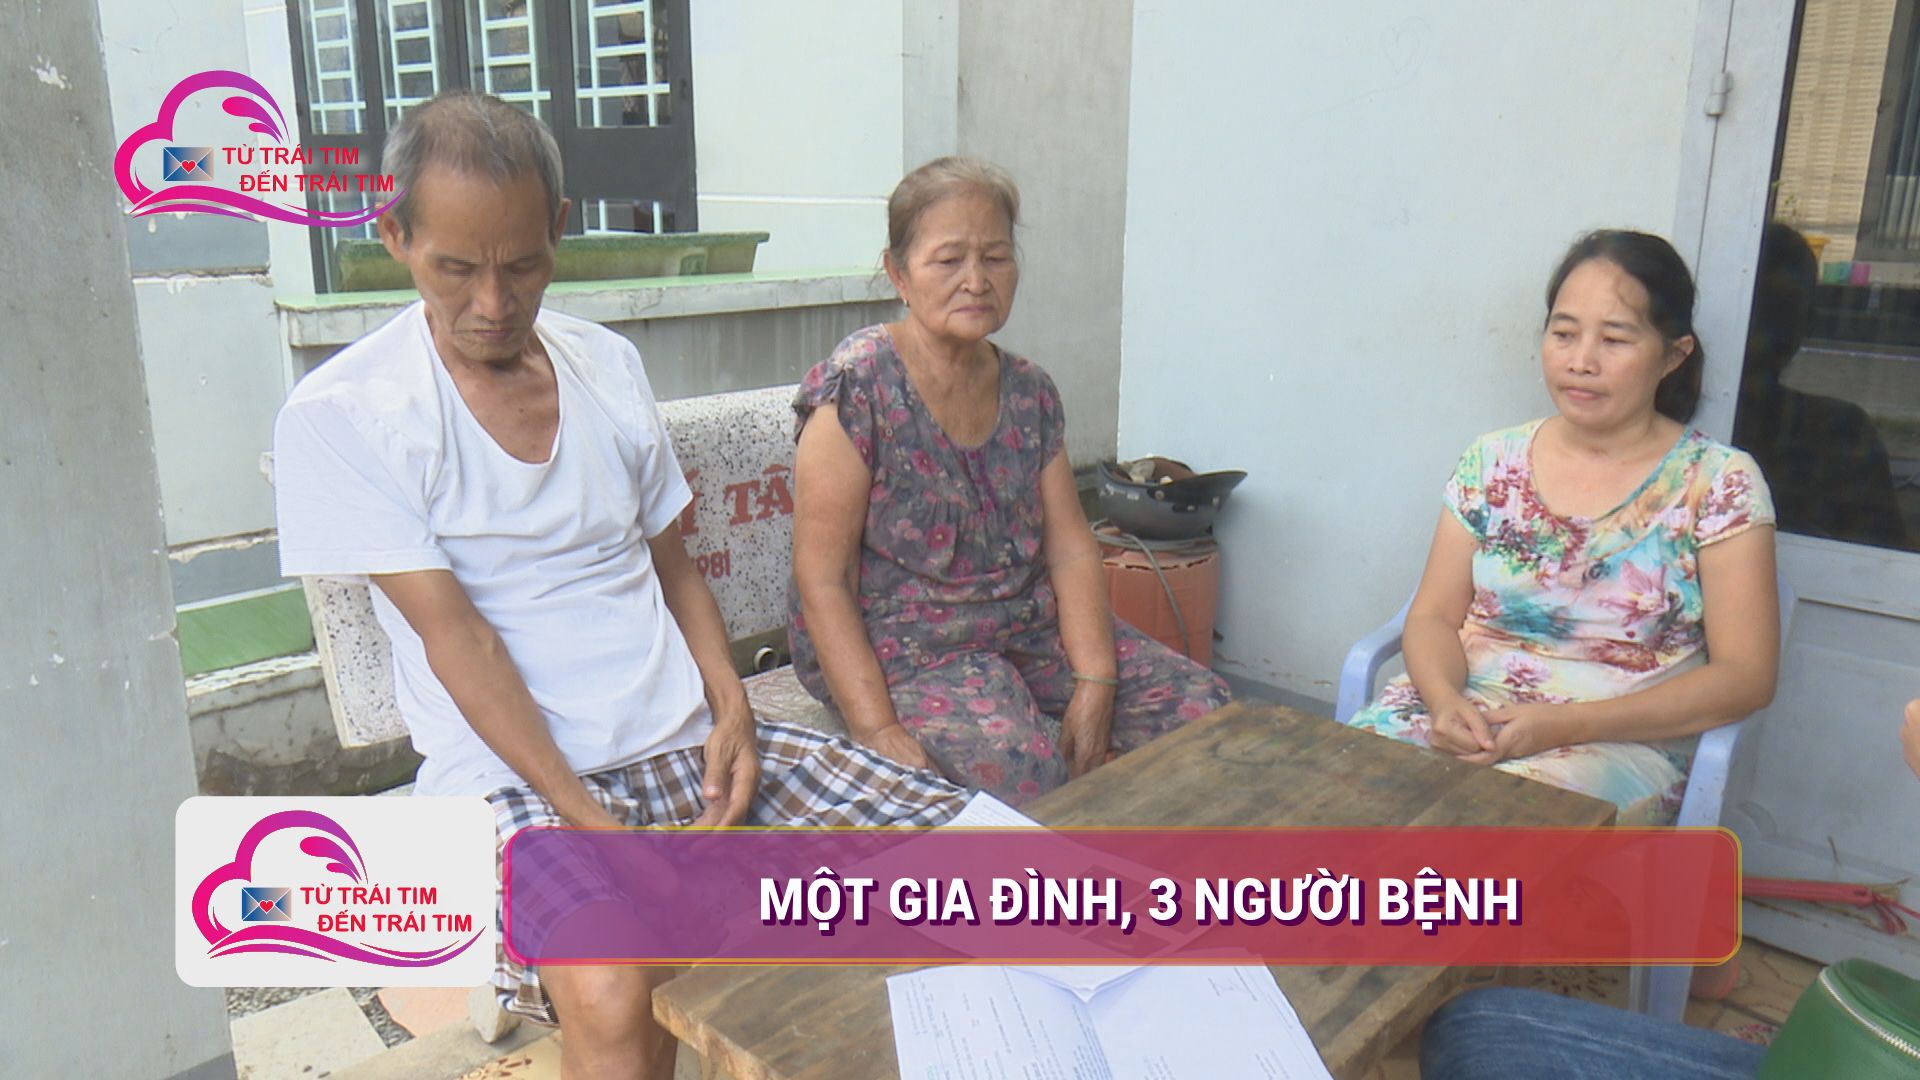 Một gia đình, 3 người bệnh | TỪ TRÁI TIM ĐẾN TRÁI TIM | TayNinhTV